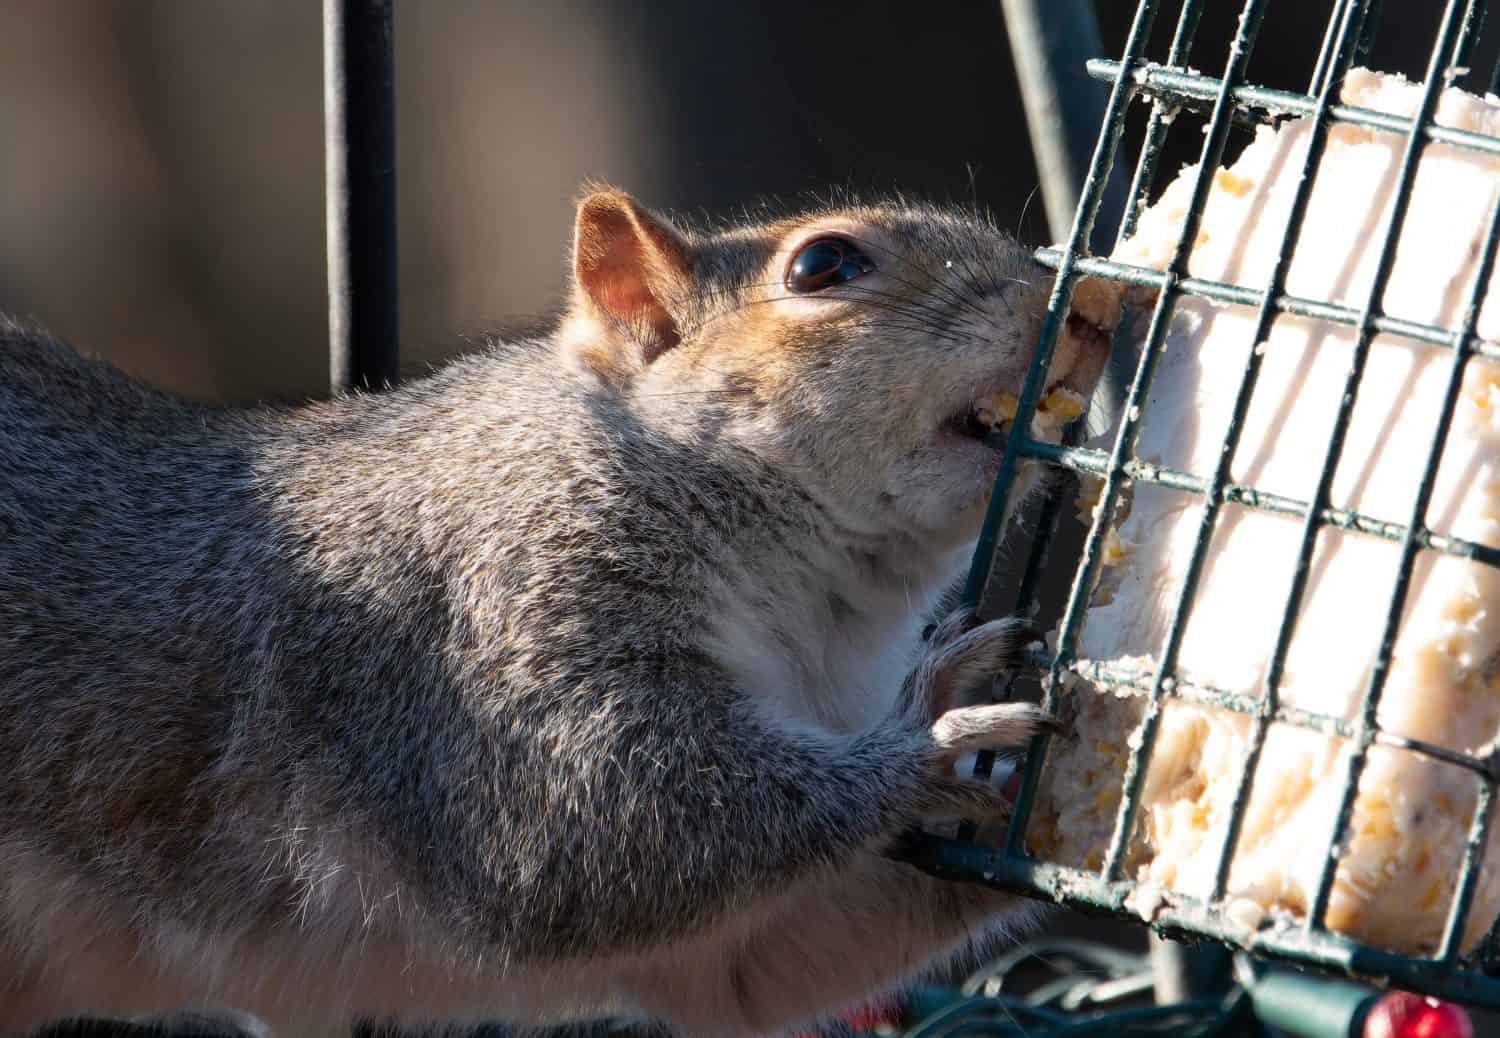 Squirrel attack the bird feeder to get suet